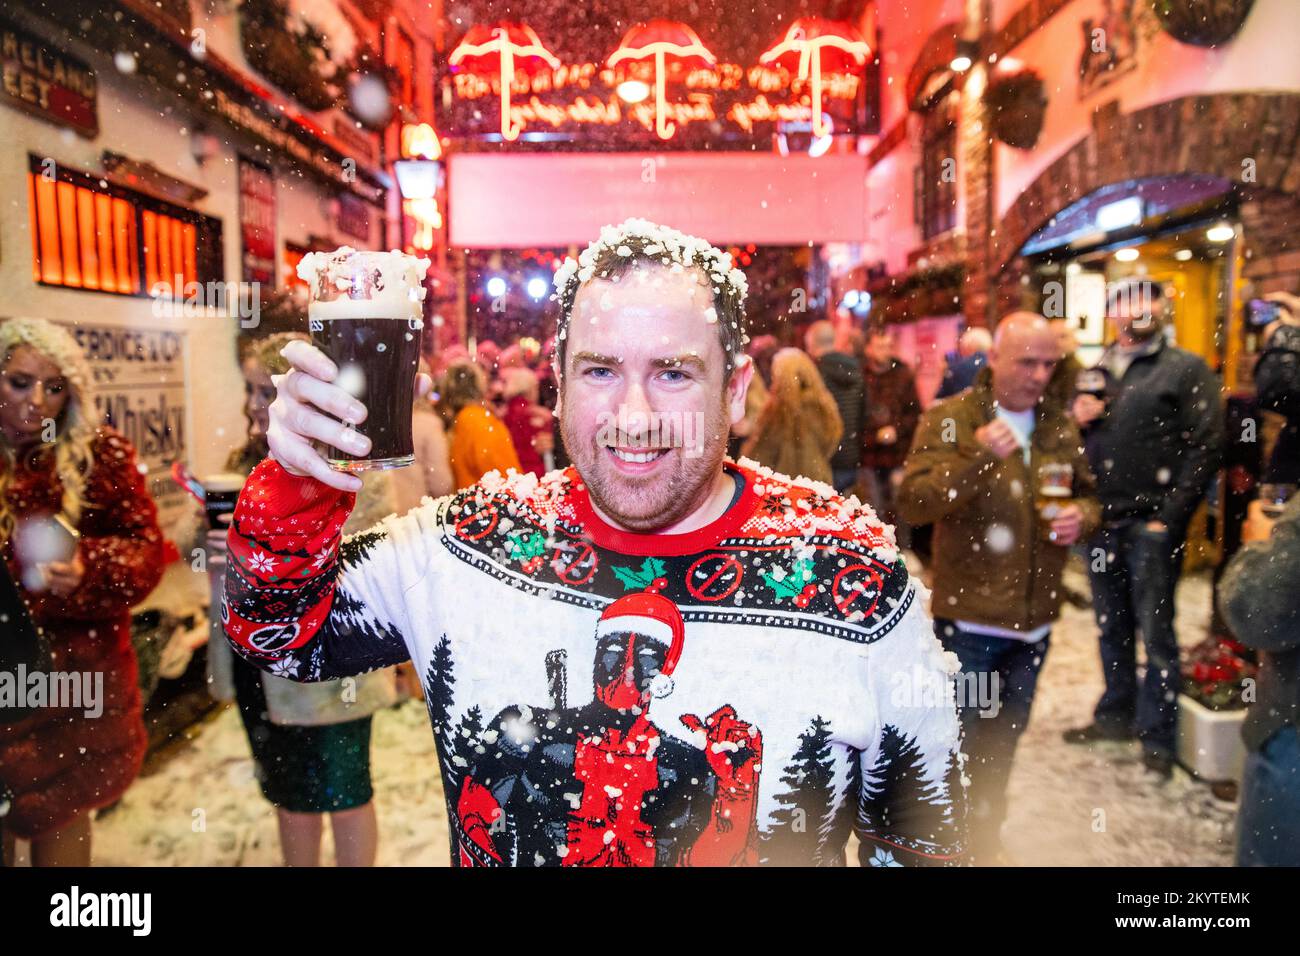 David Gibson sulle strade acciottolate di Commercial Court fuori del bar Duke of York a Belfast, mentre Guinness ha dato vita al suo iconico annuncio natalizio con una macchina da neve, mentre gli ospiti sono stati accolti da una pinta per iniziare la stagione festiva. Foto Stock